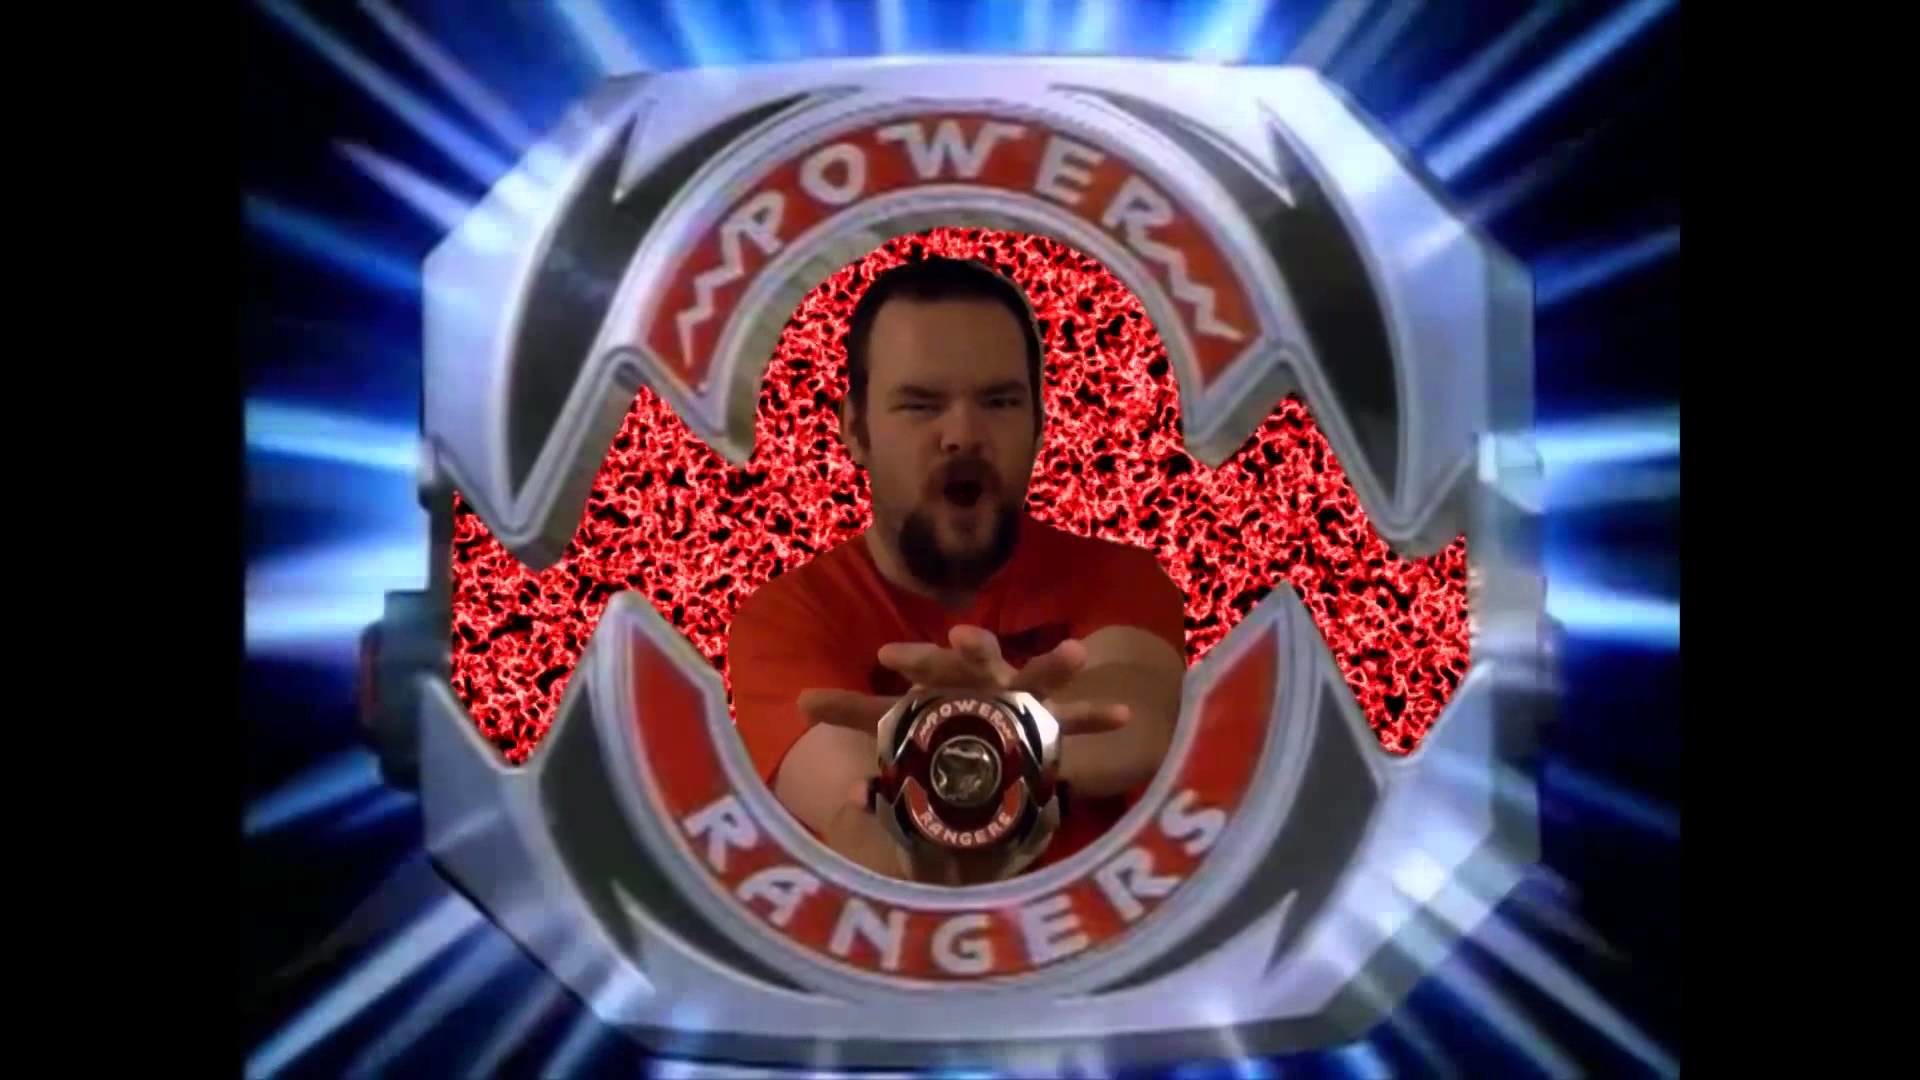 Mighty Morphin Power Rangers – Red Ranger Morph Legacy Morpher – YouTube